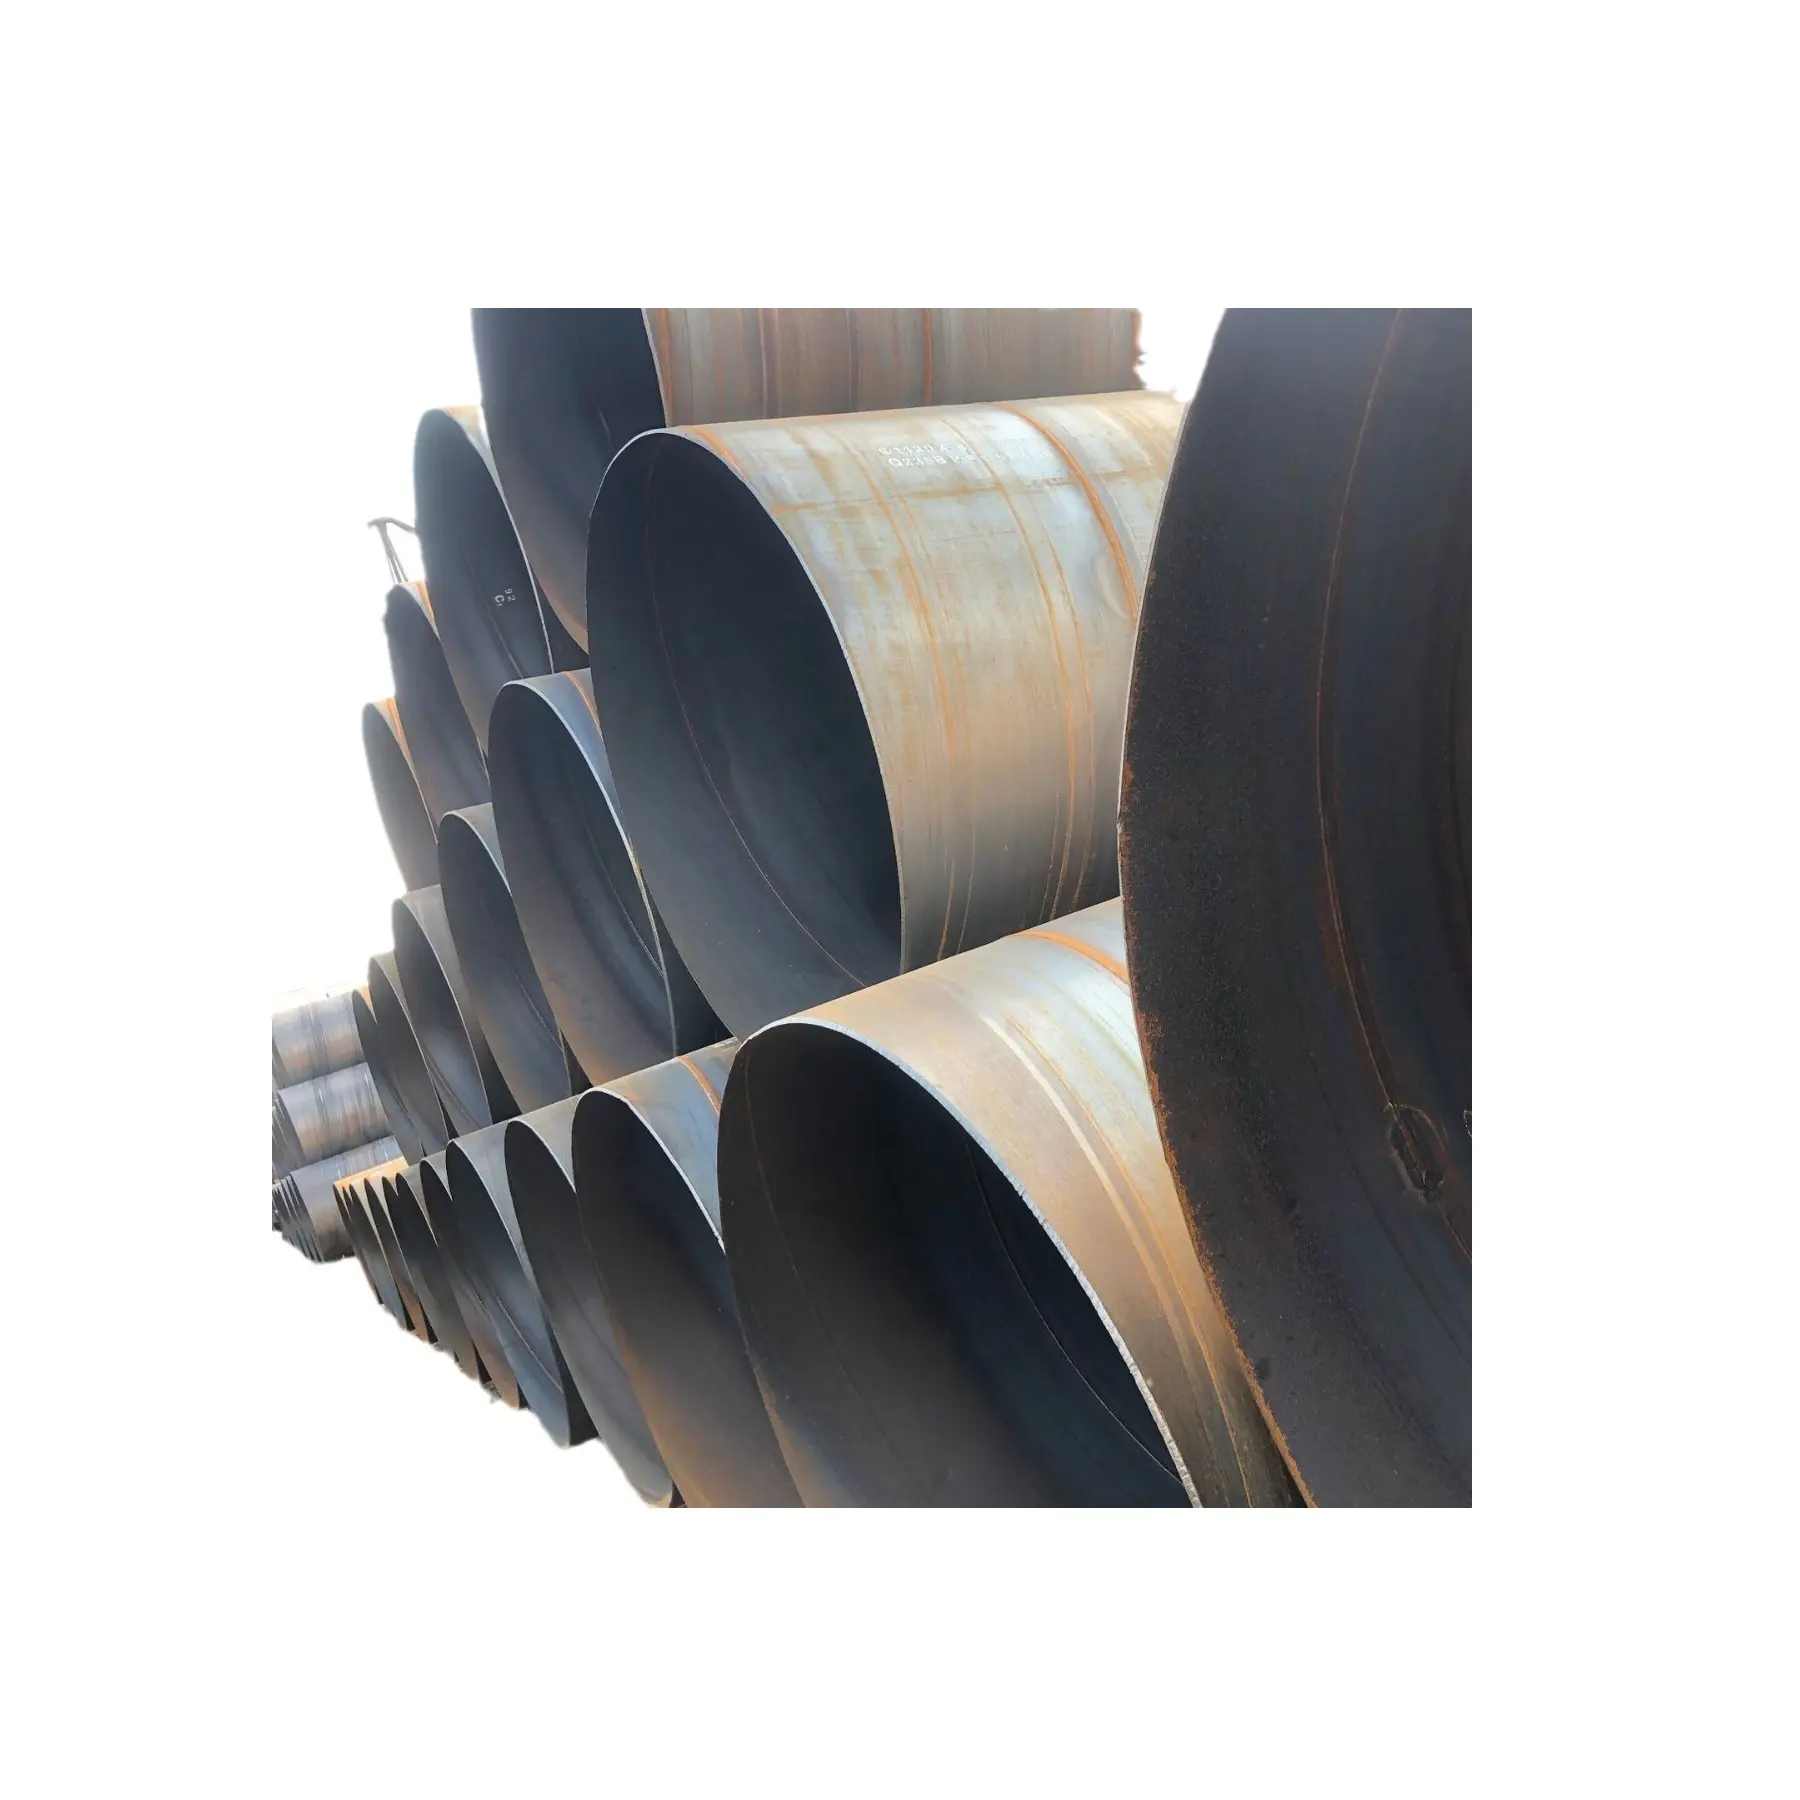 Trinkwasser epoxykol asphalt korrosionsgeschützt spiralförmiges stahlrohr 8710 epoxidharz vertiefete korrosionsgeschützte Rohrleitung